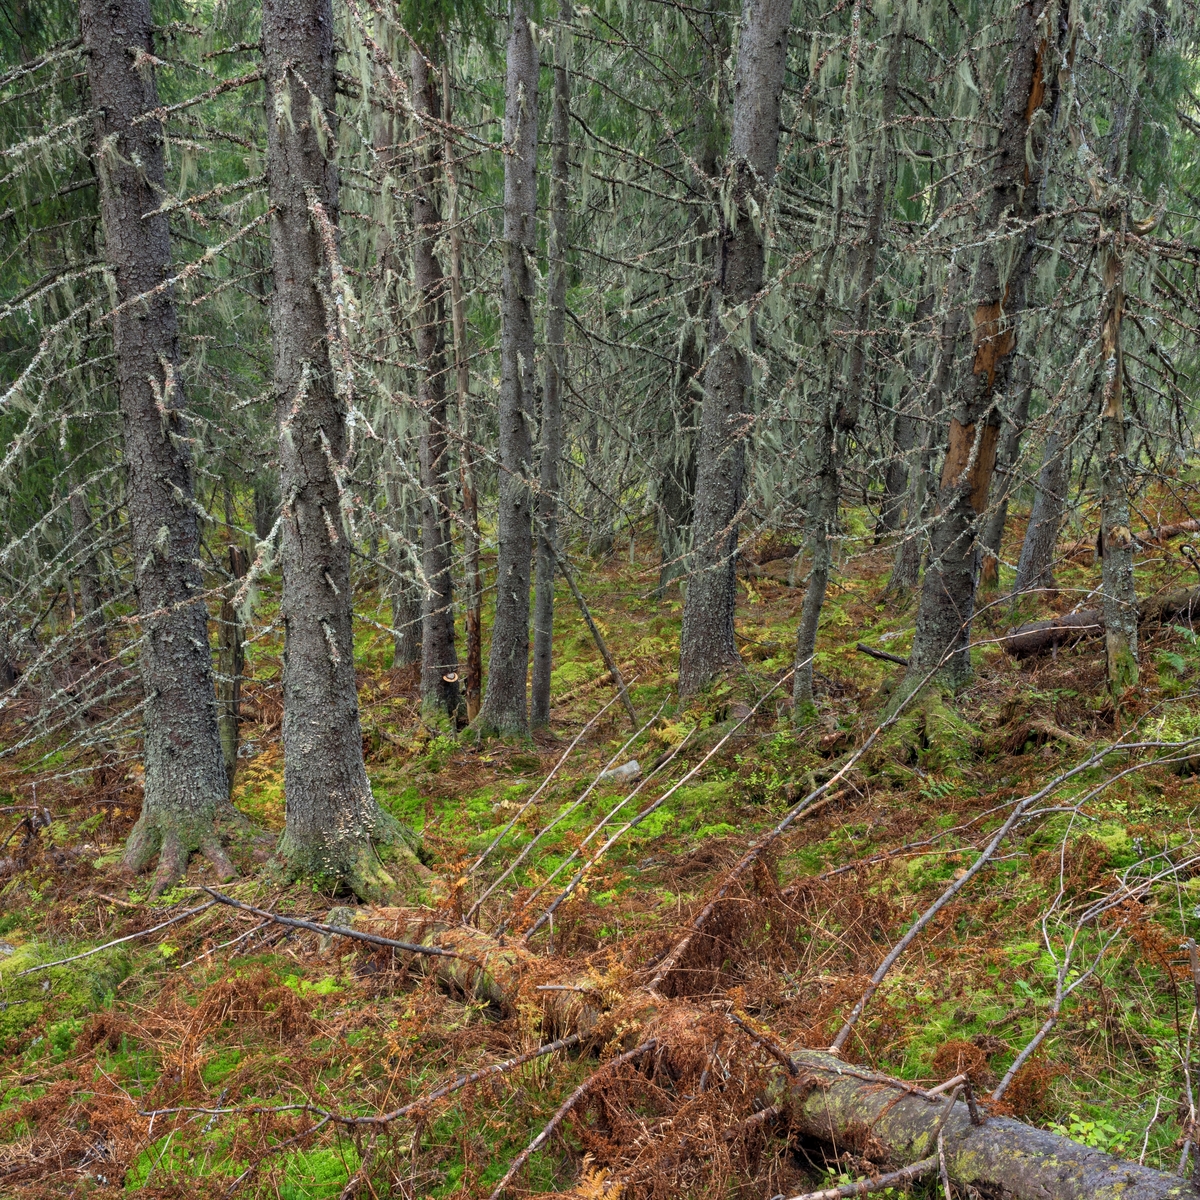 Gammelskog med huldrestry- en rødlistet, sterkt truet hengelav. Som oftest vokser den i gammel granskog, gjerne på gamle grantrær der det er høy luftfuktighet og ikke alt for tett skog. Huldrestry er en epifyttisk hengelav. Epifytt vil si at den vokser på en plante. I Norge finnes det omtrent 40 ulike varianter av hengelav, og av disse er fjorten rødlistet. Snertingdal, Gjøvik, Innlandet.